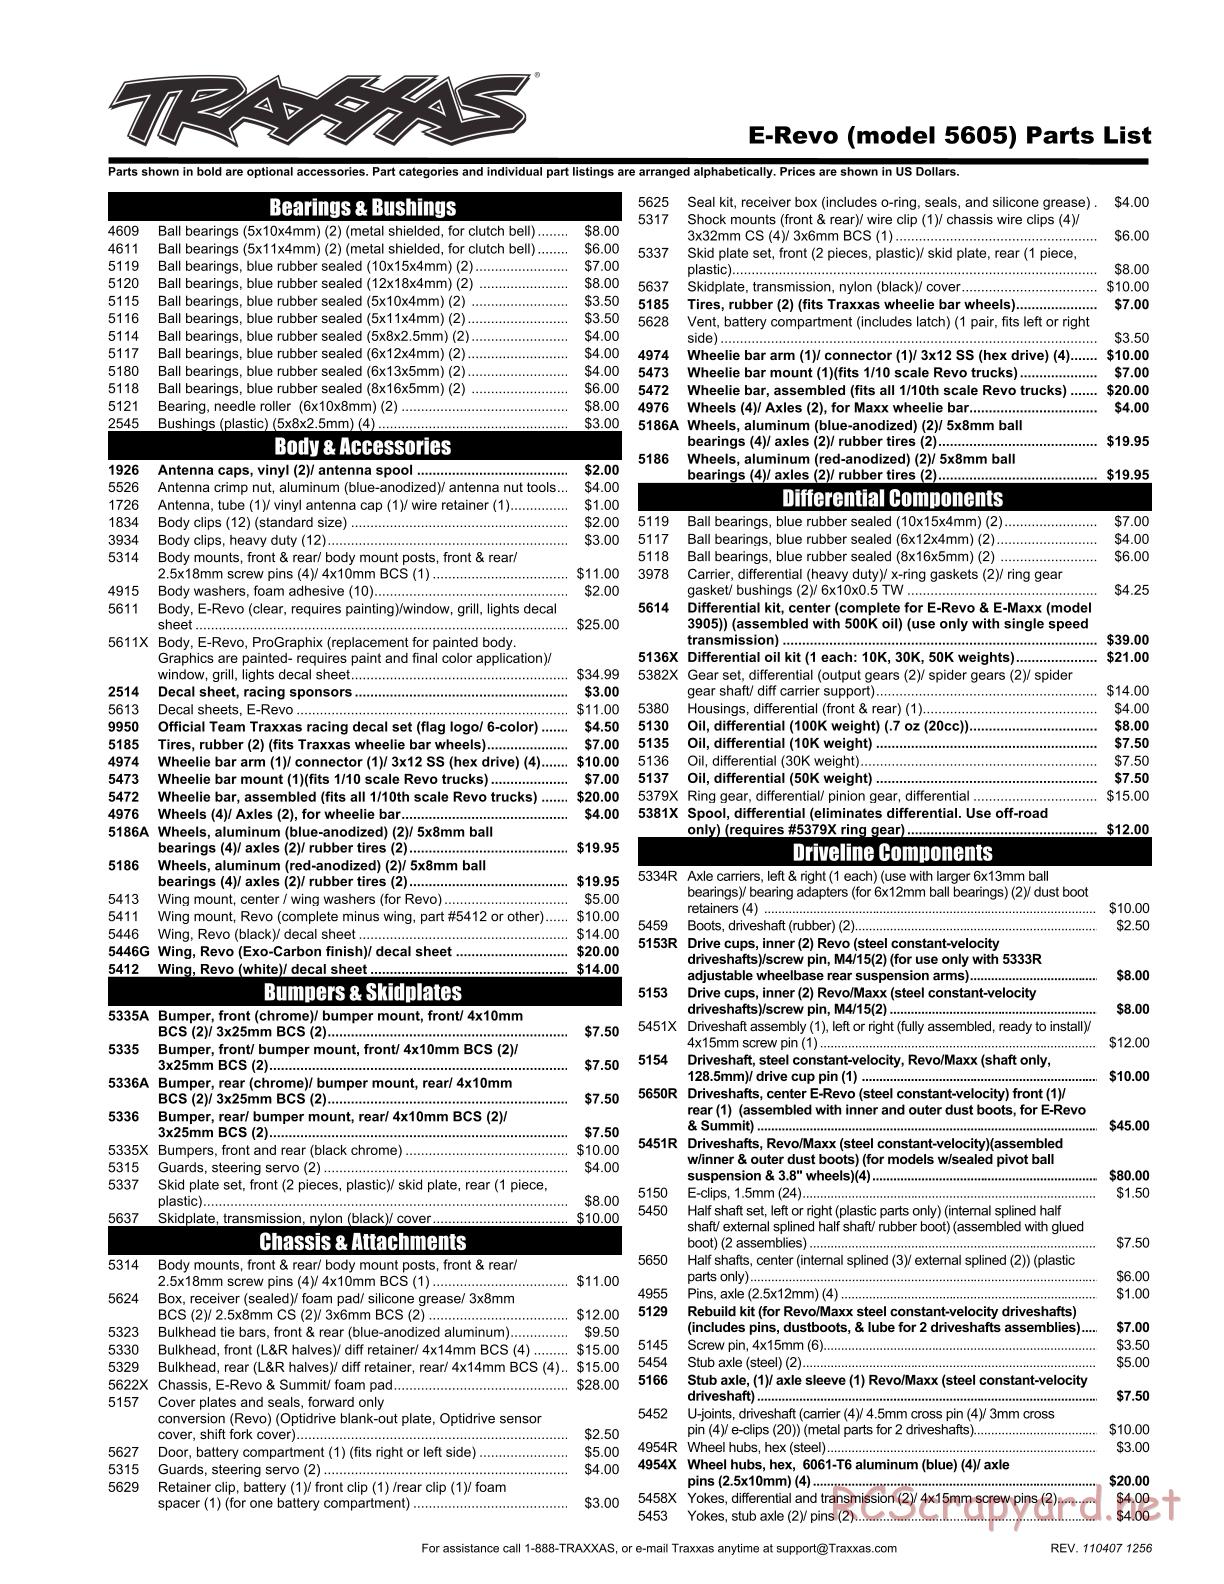 Traxxas - E-Revo (2008) - Parts List - Page 1